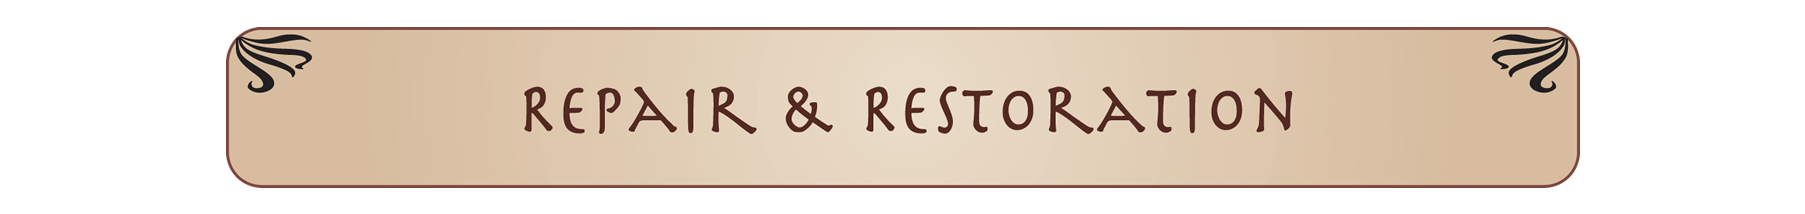 restore-1a